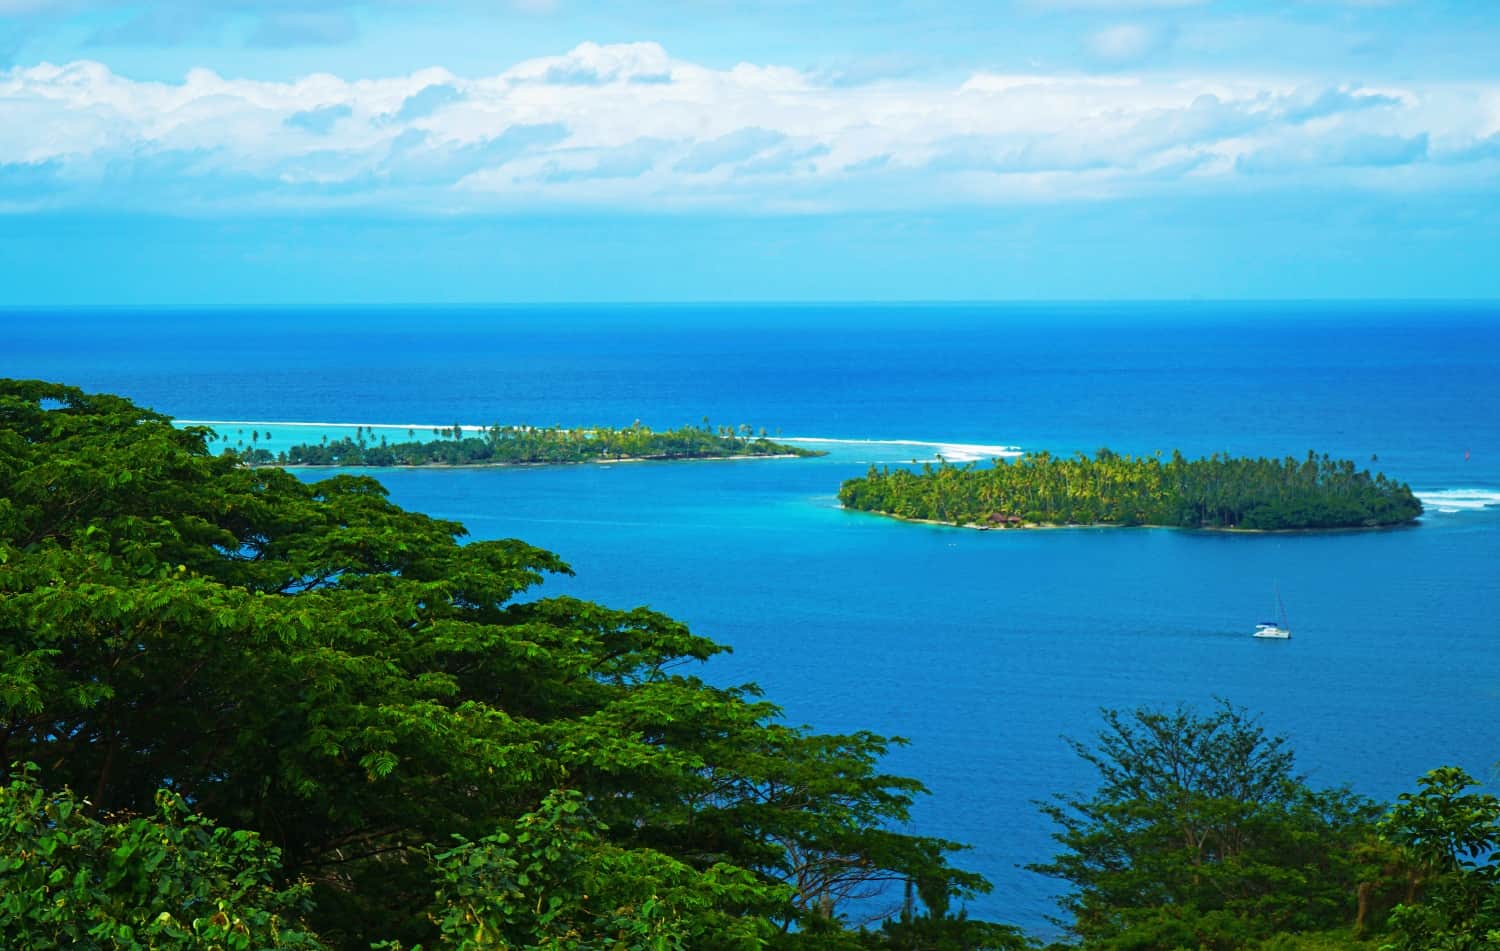 Lagoon views in Raiatea, French Polynesia